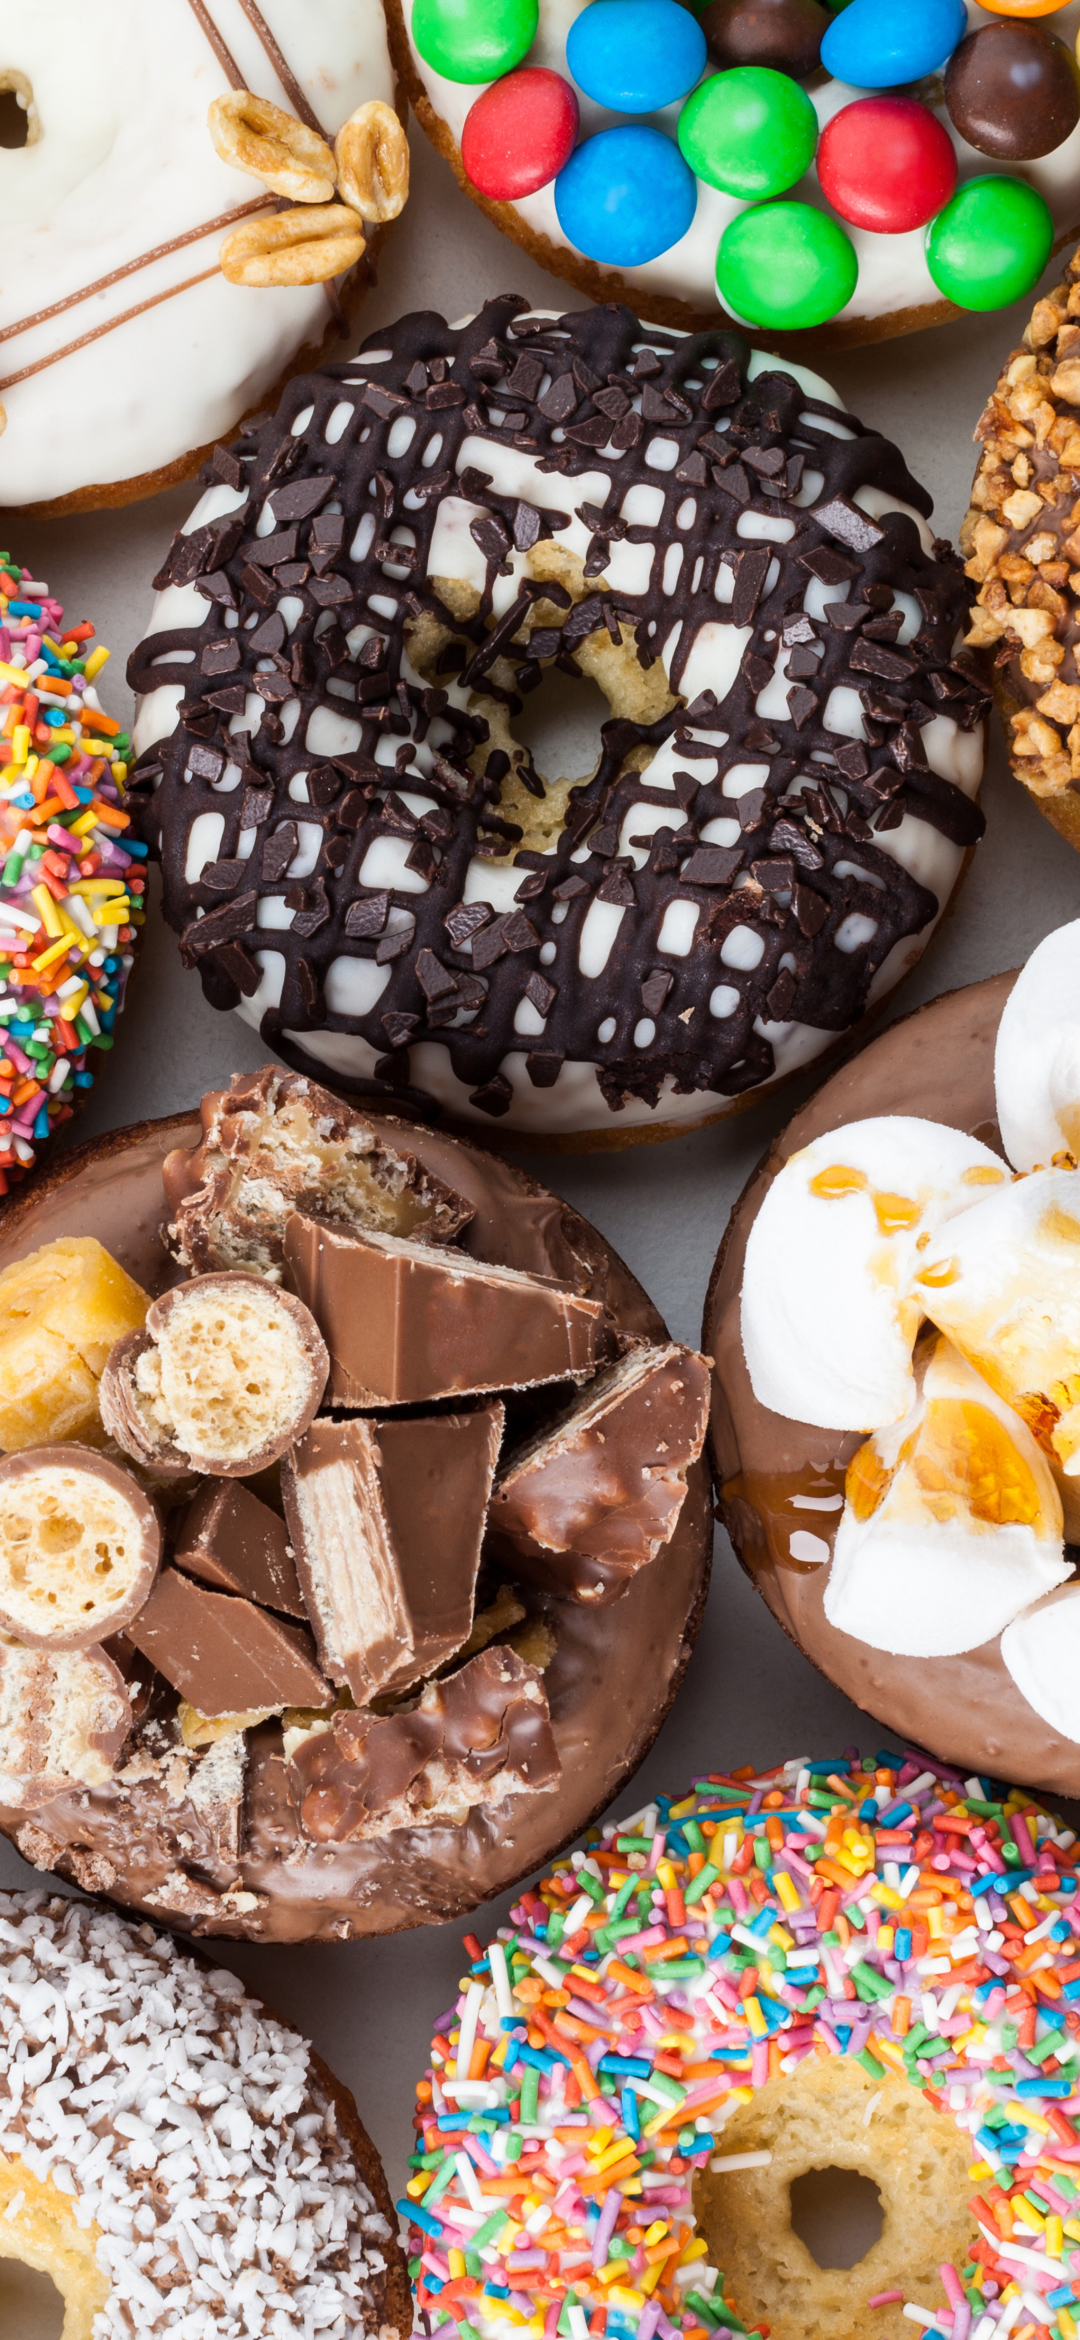 Descarga gratuita de fondo de pantalla para móvil de Chocolate, Dulce, Dulces, Caramelo, Alimento, Donut.